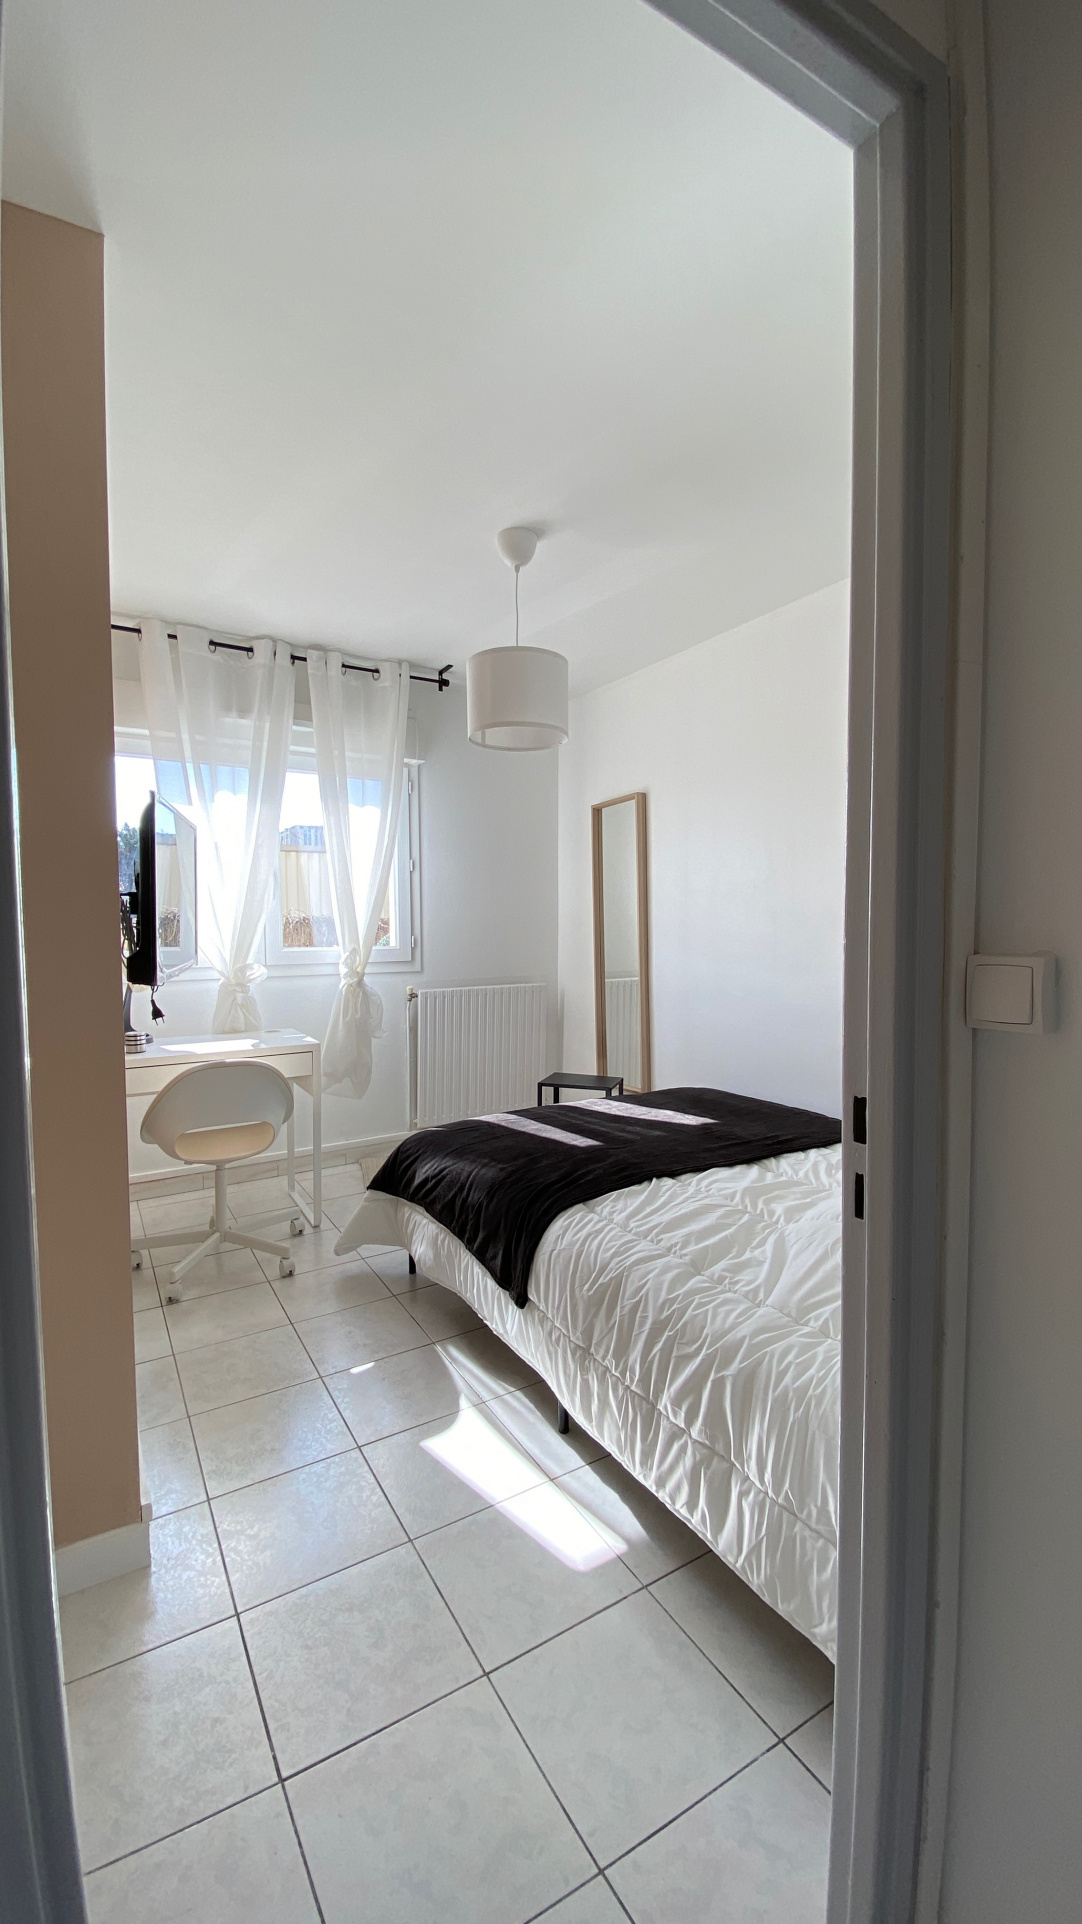 Toulouse,31100,1 chambre Bedrooms,1 chambre Rooms,1 la Salle de bainBathrooms,Appartement,1013